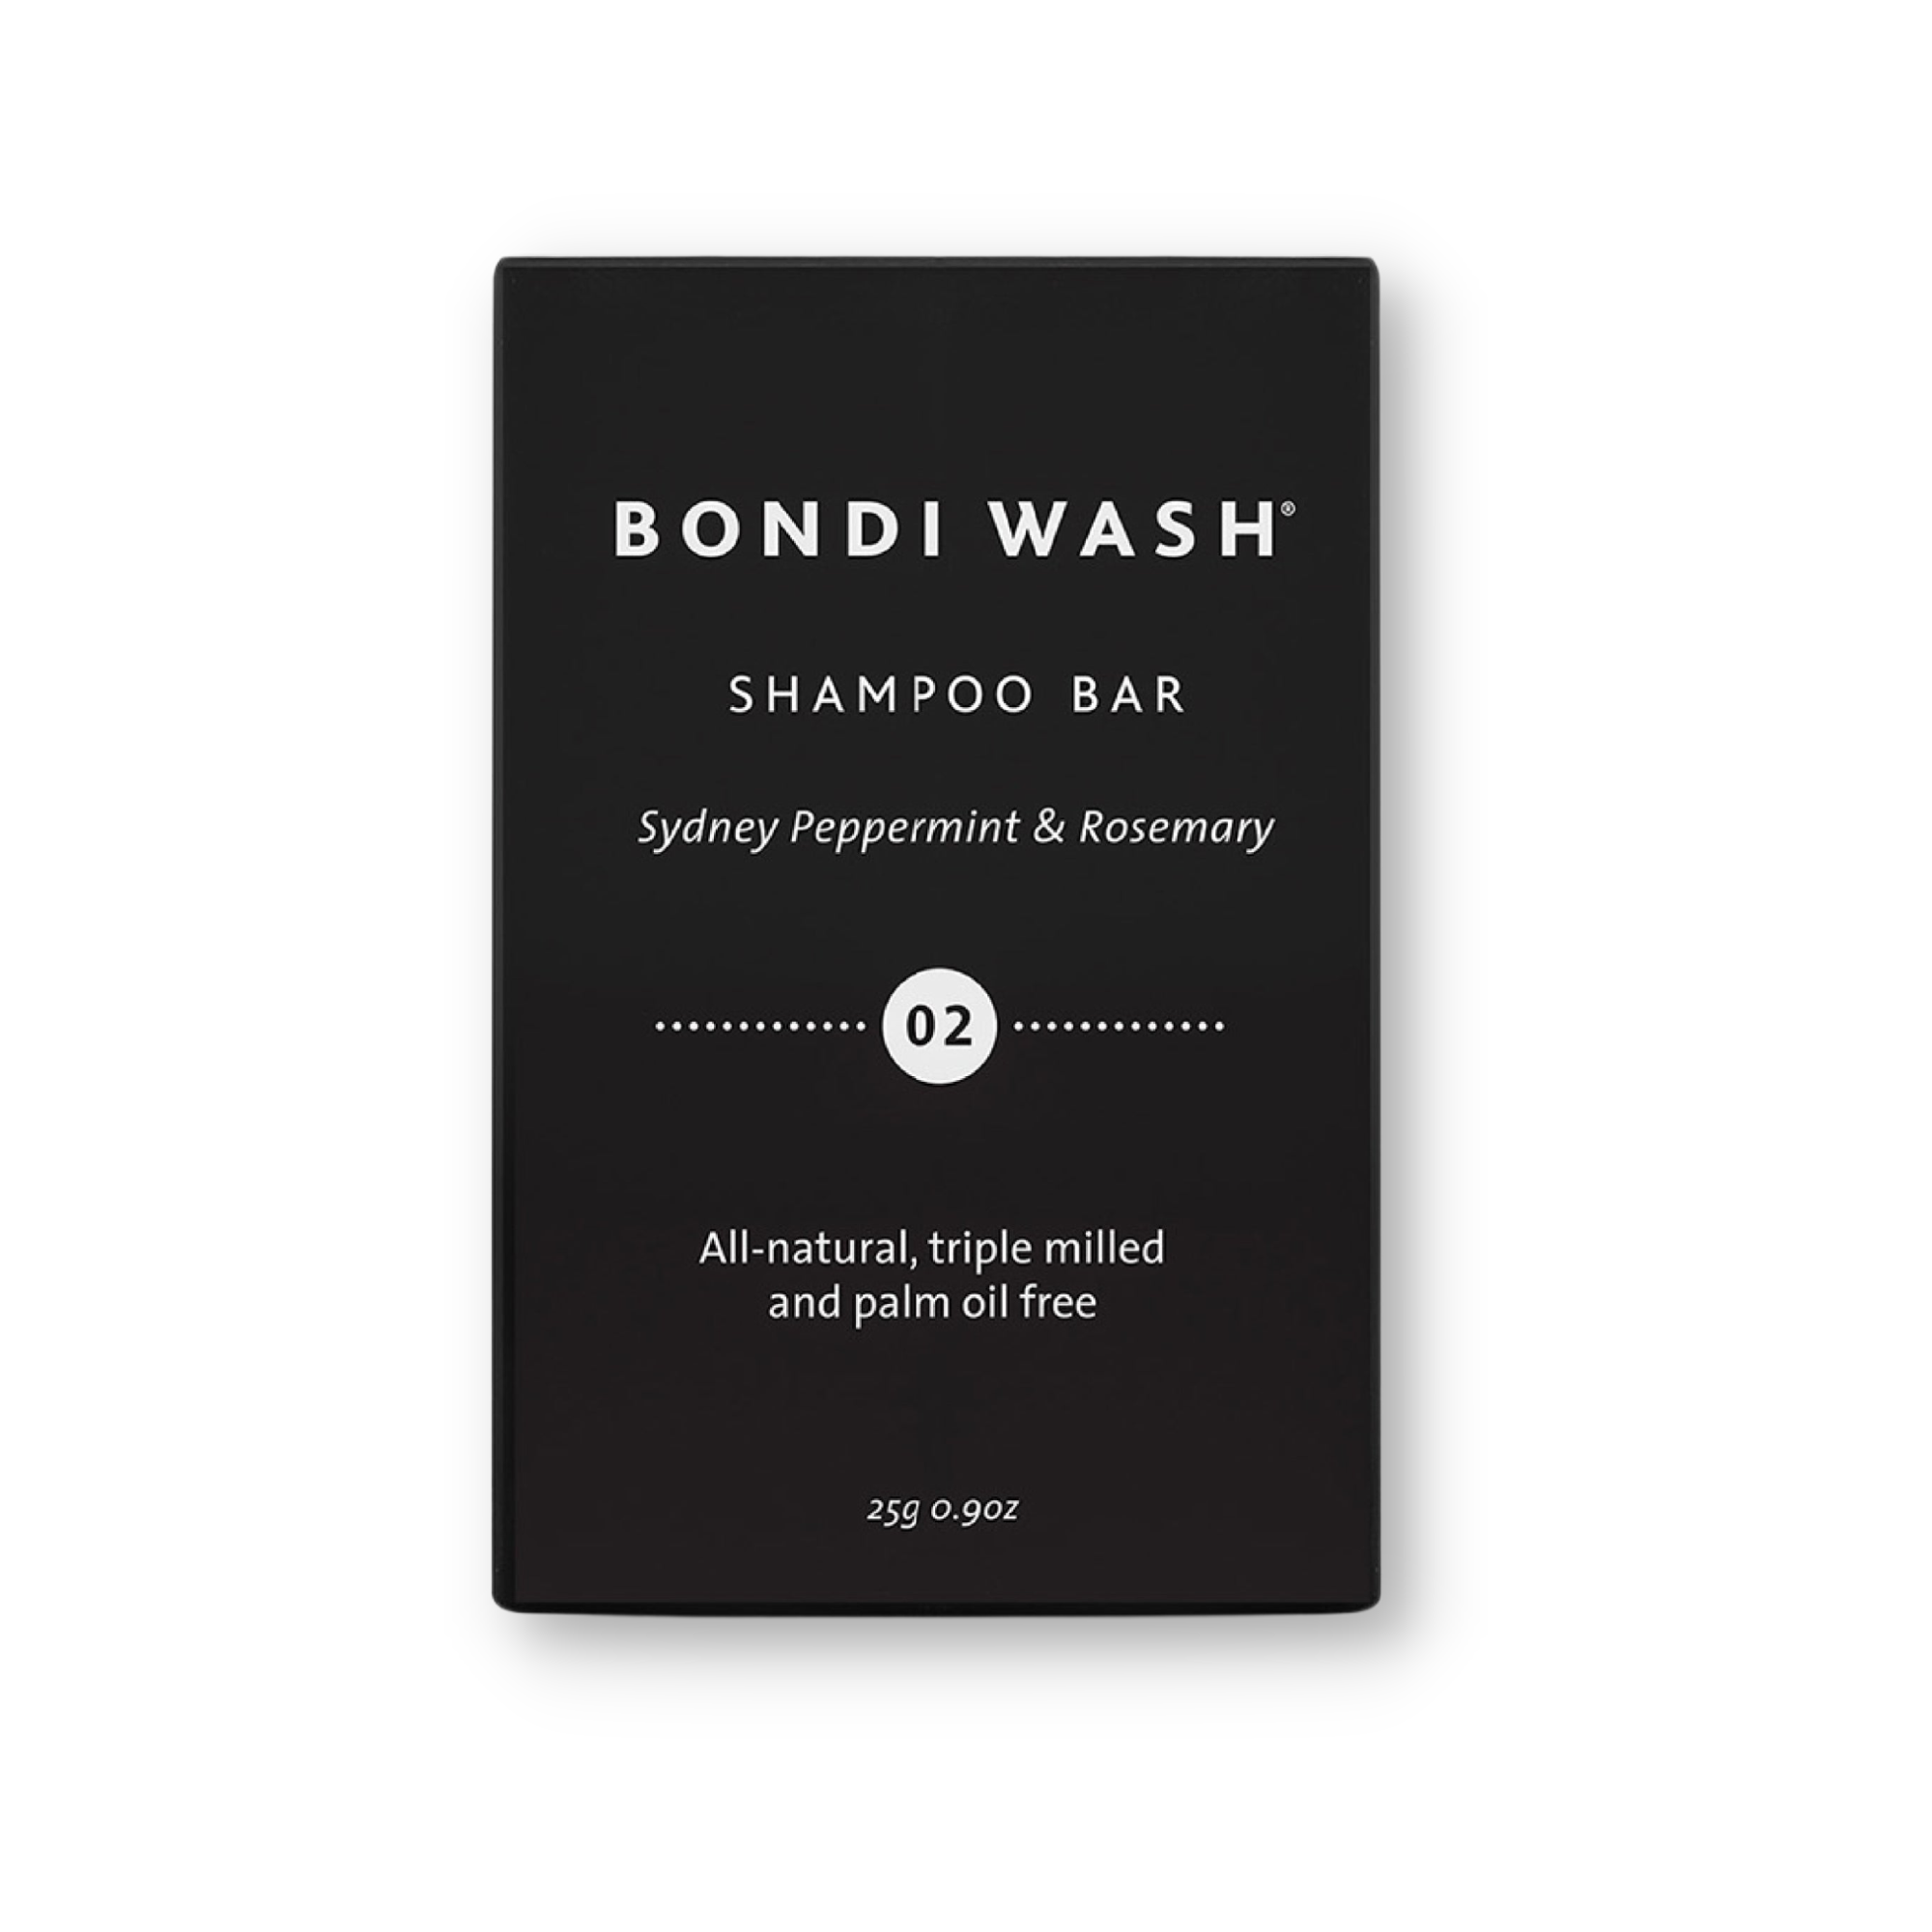 Bondi Wash Shampoo Bar Sydney Peppermint & Rosemary 25gr